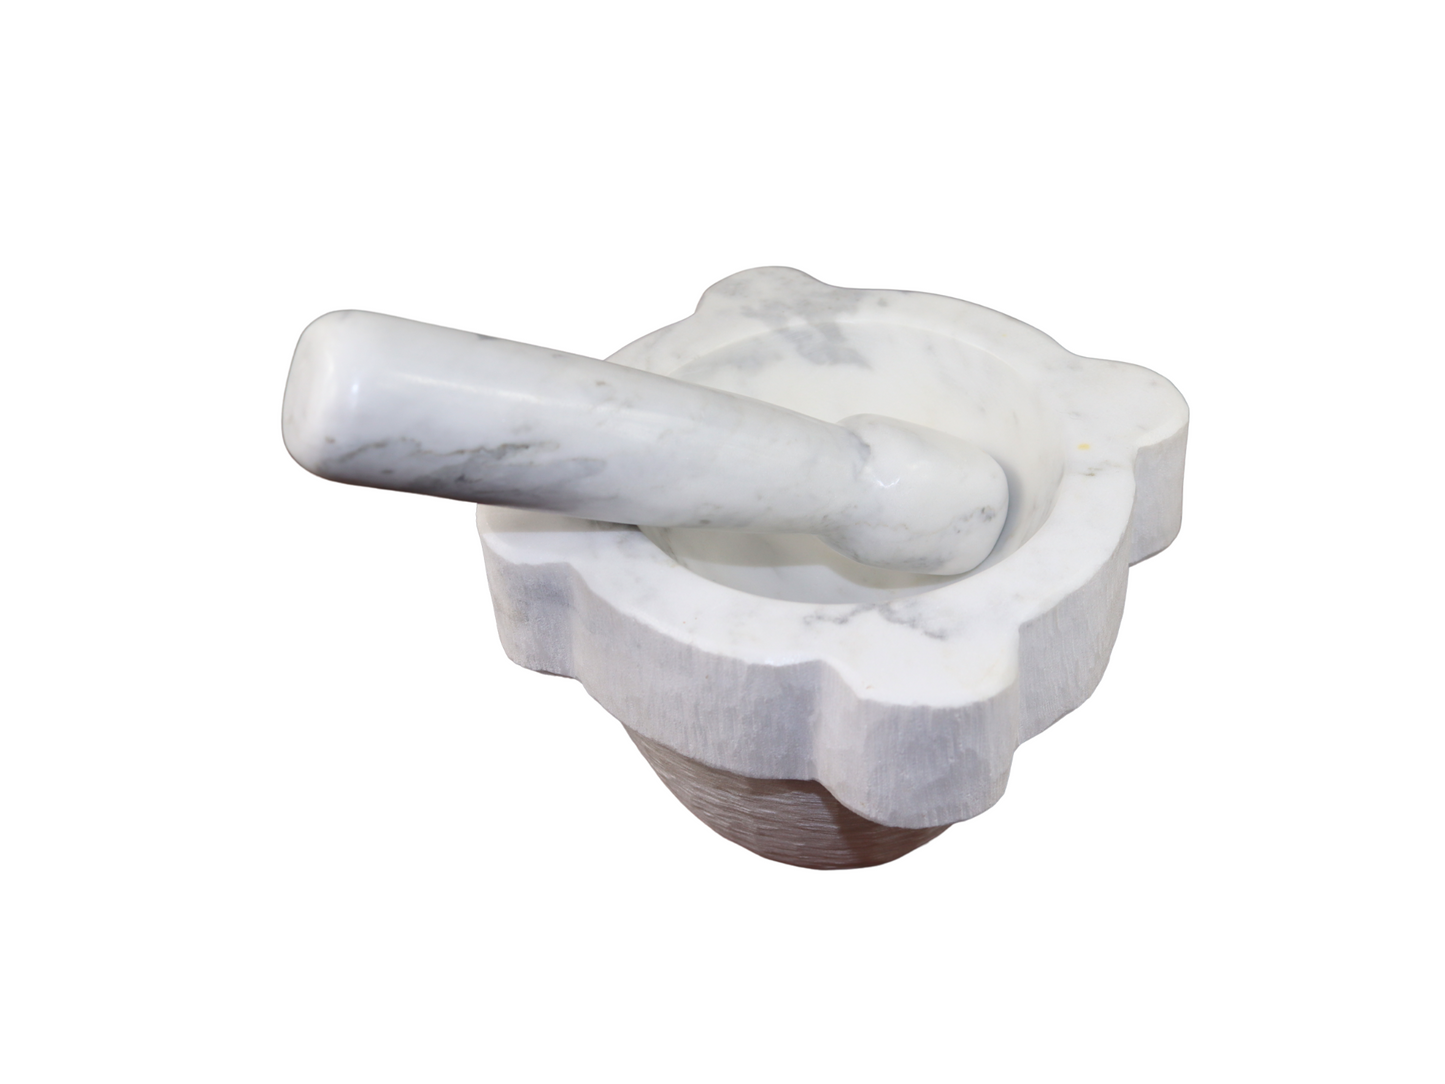 Mortaio in marmo bianco di Carrara corredato da pestello fatto rigorosamente a mano